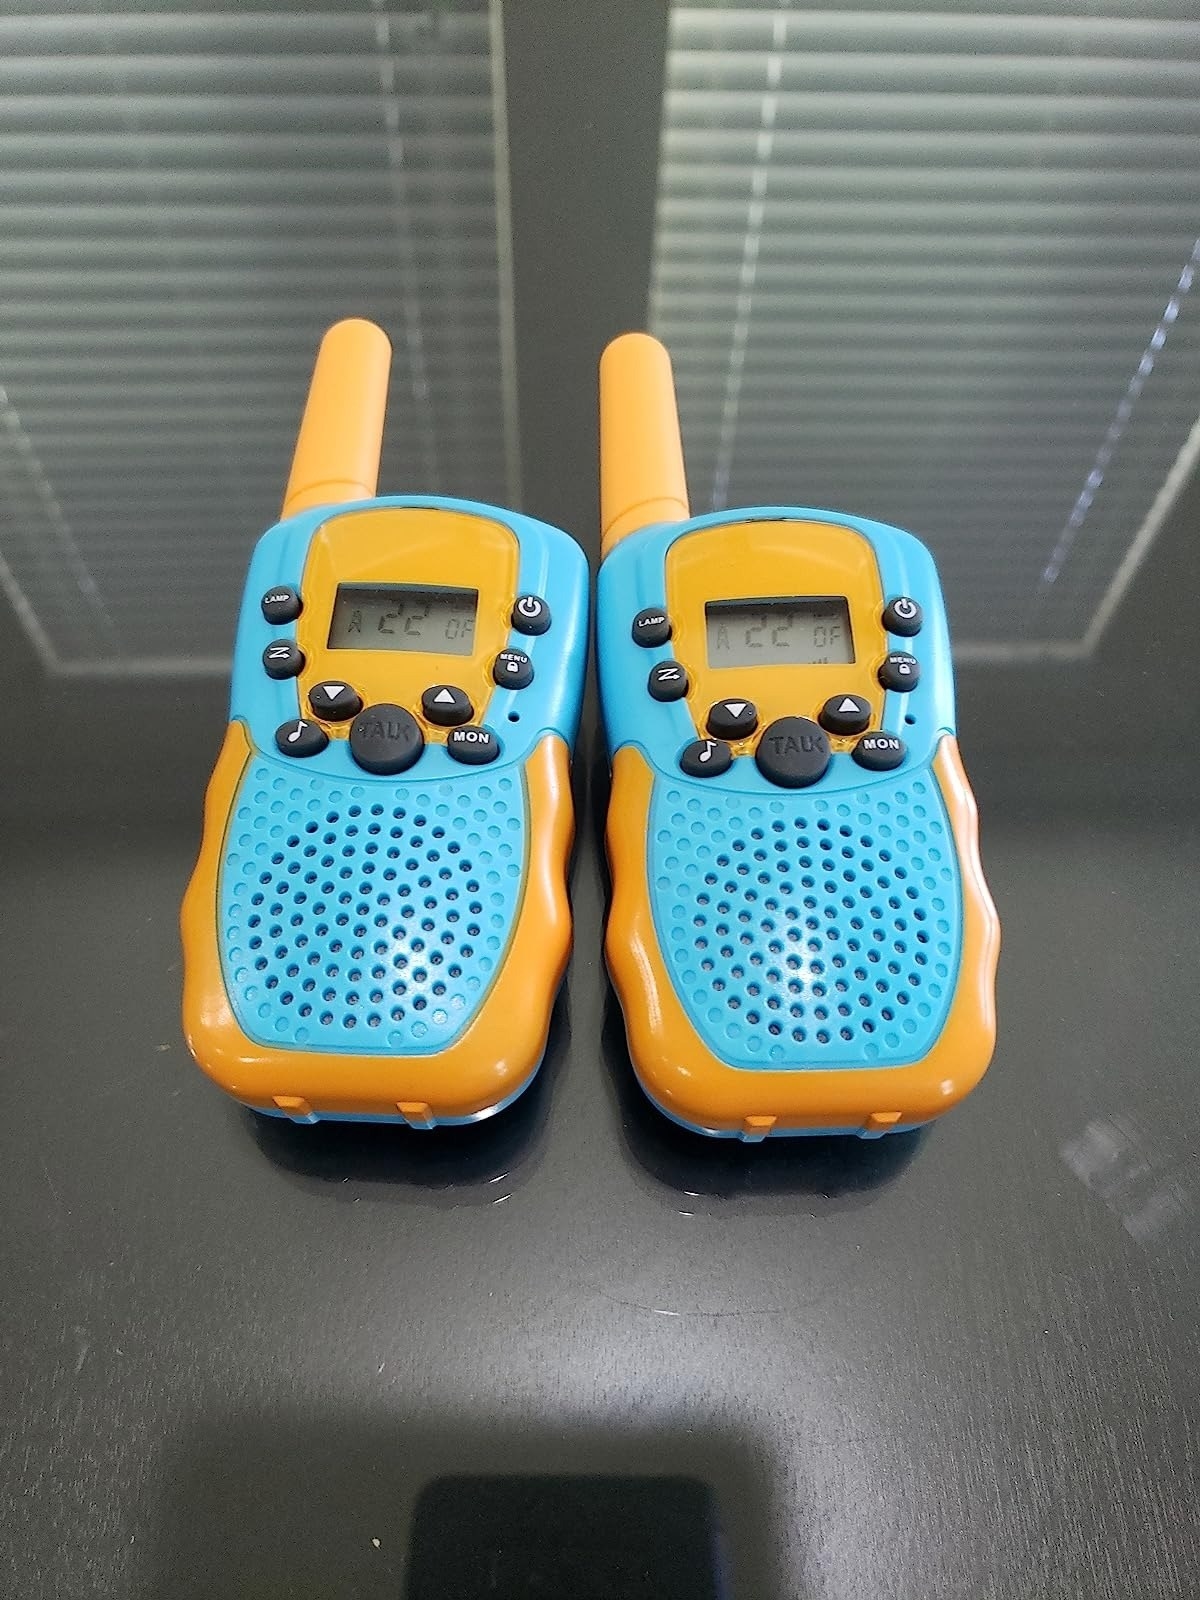 A pair of walkie talkies